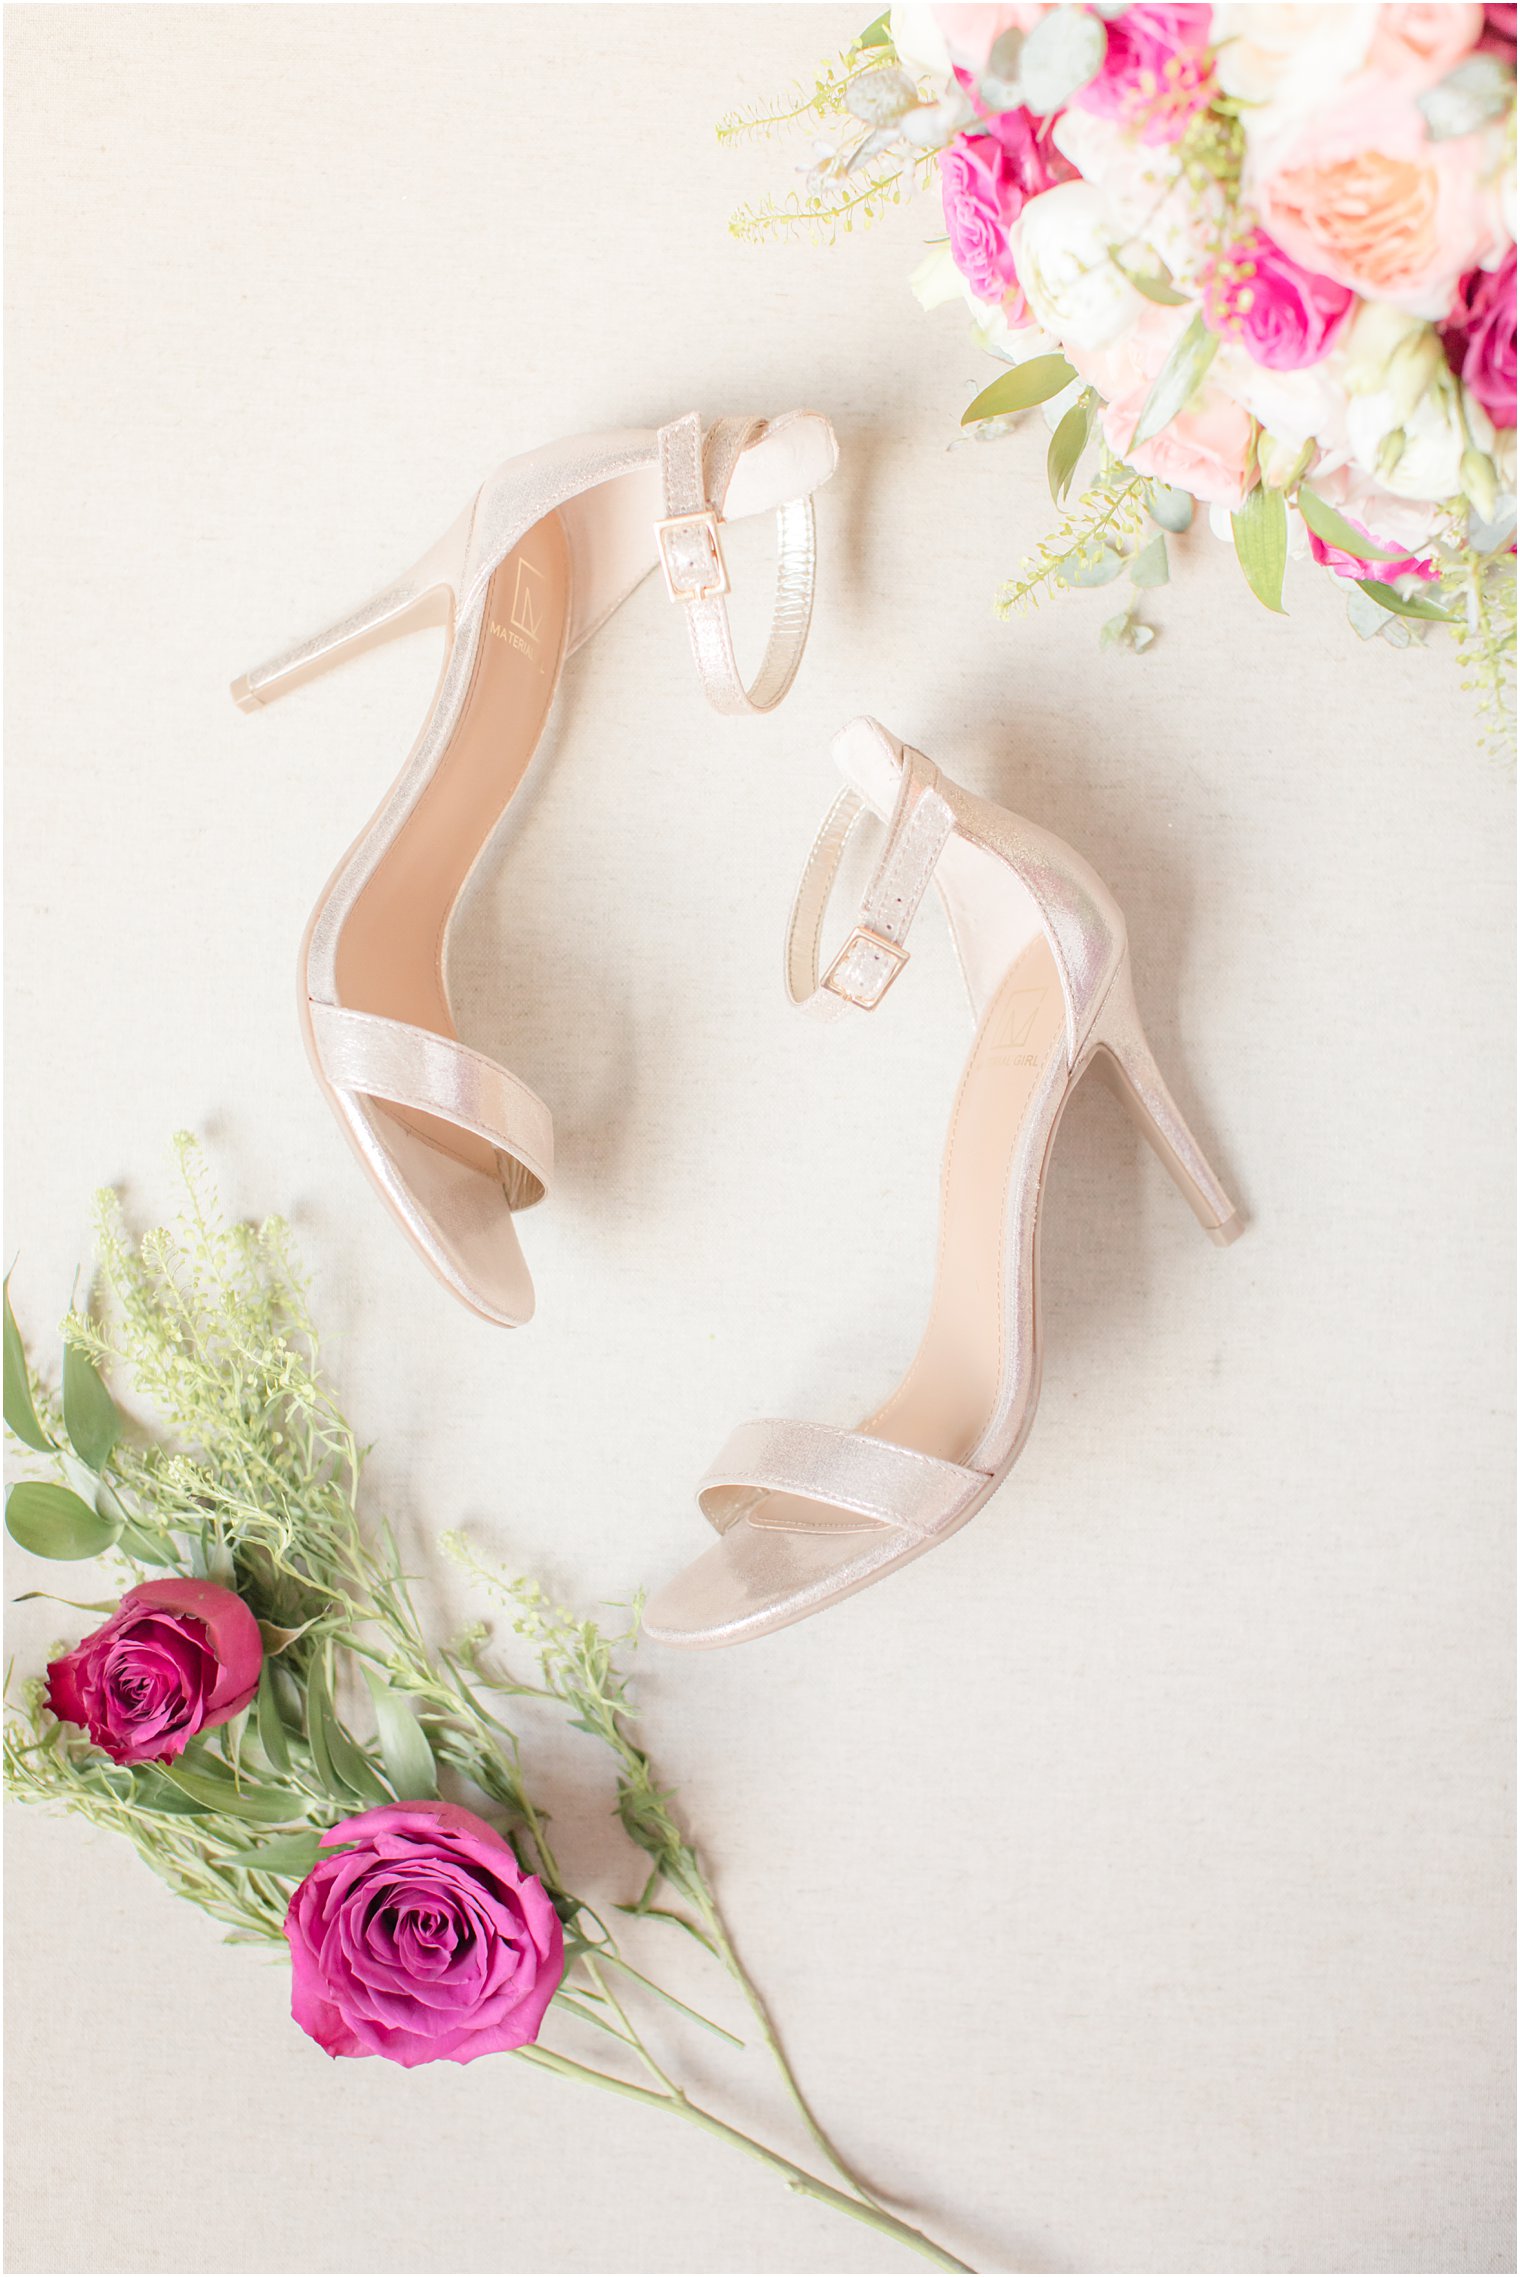 Rose gold wedding shoes | Stone House at Stirling Ridge Wedding Photography by Idalia Photography